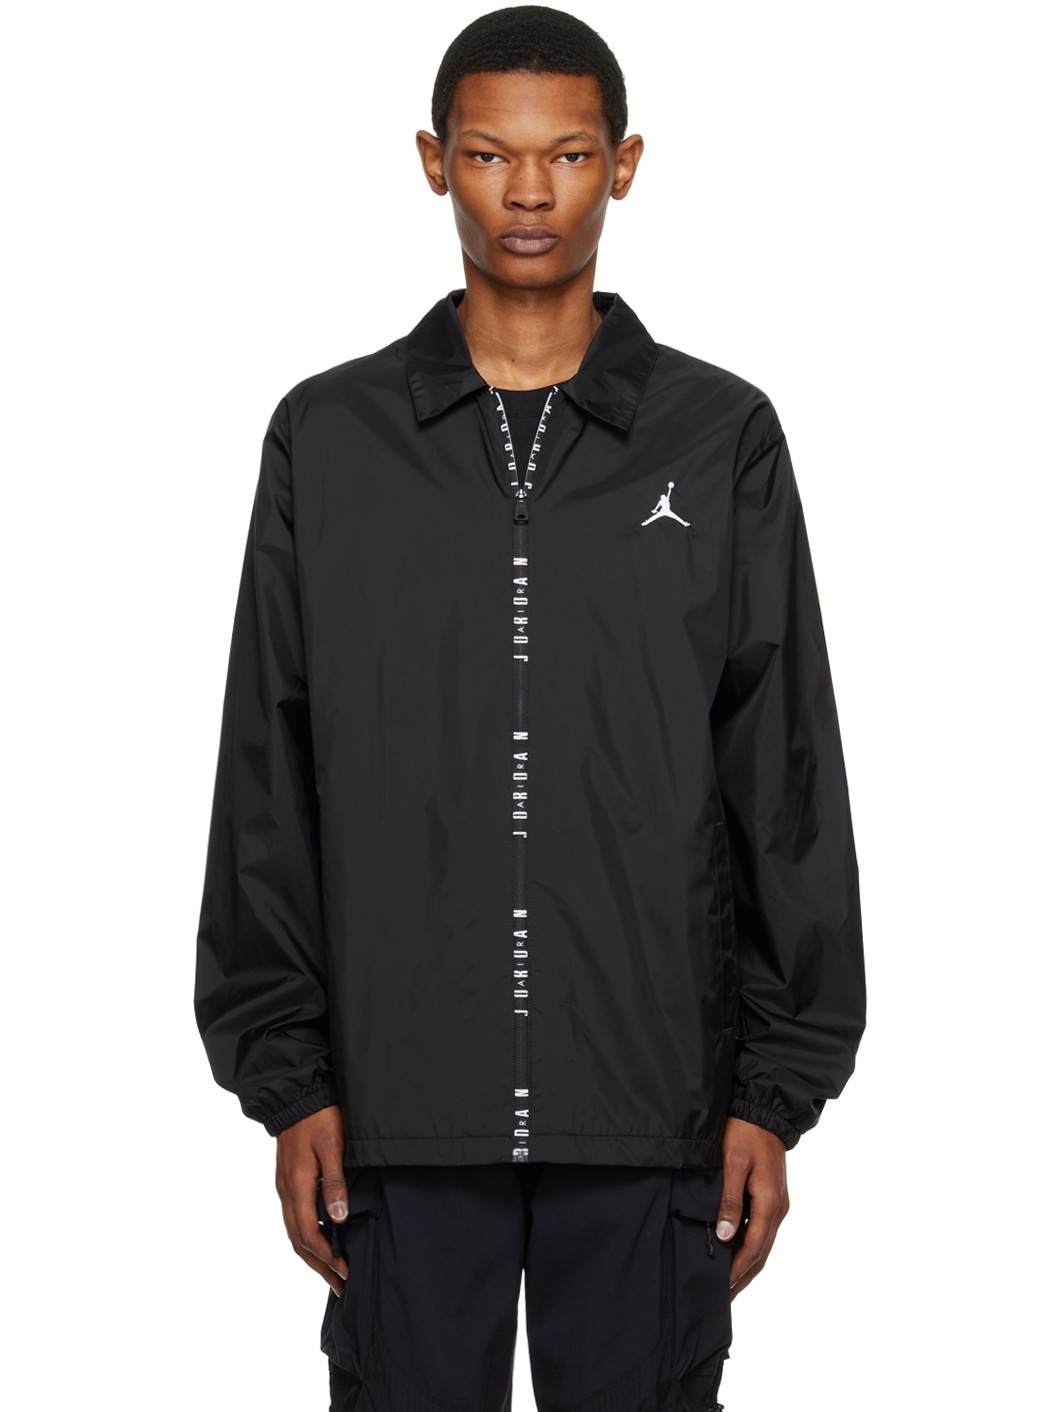 Black Jordan Essentials Jacket - 1